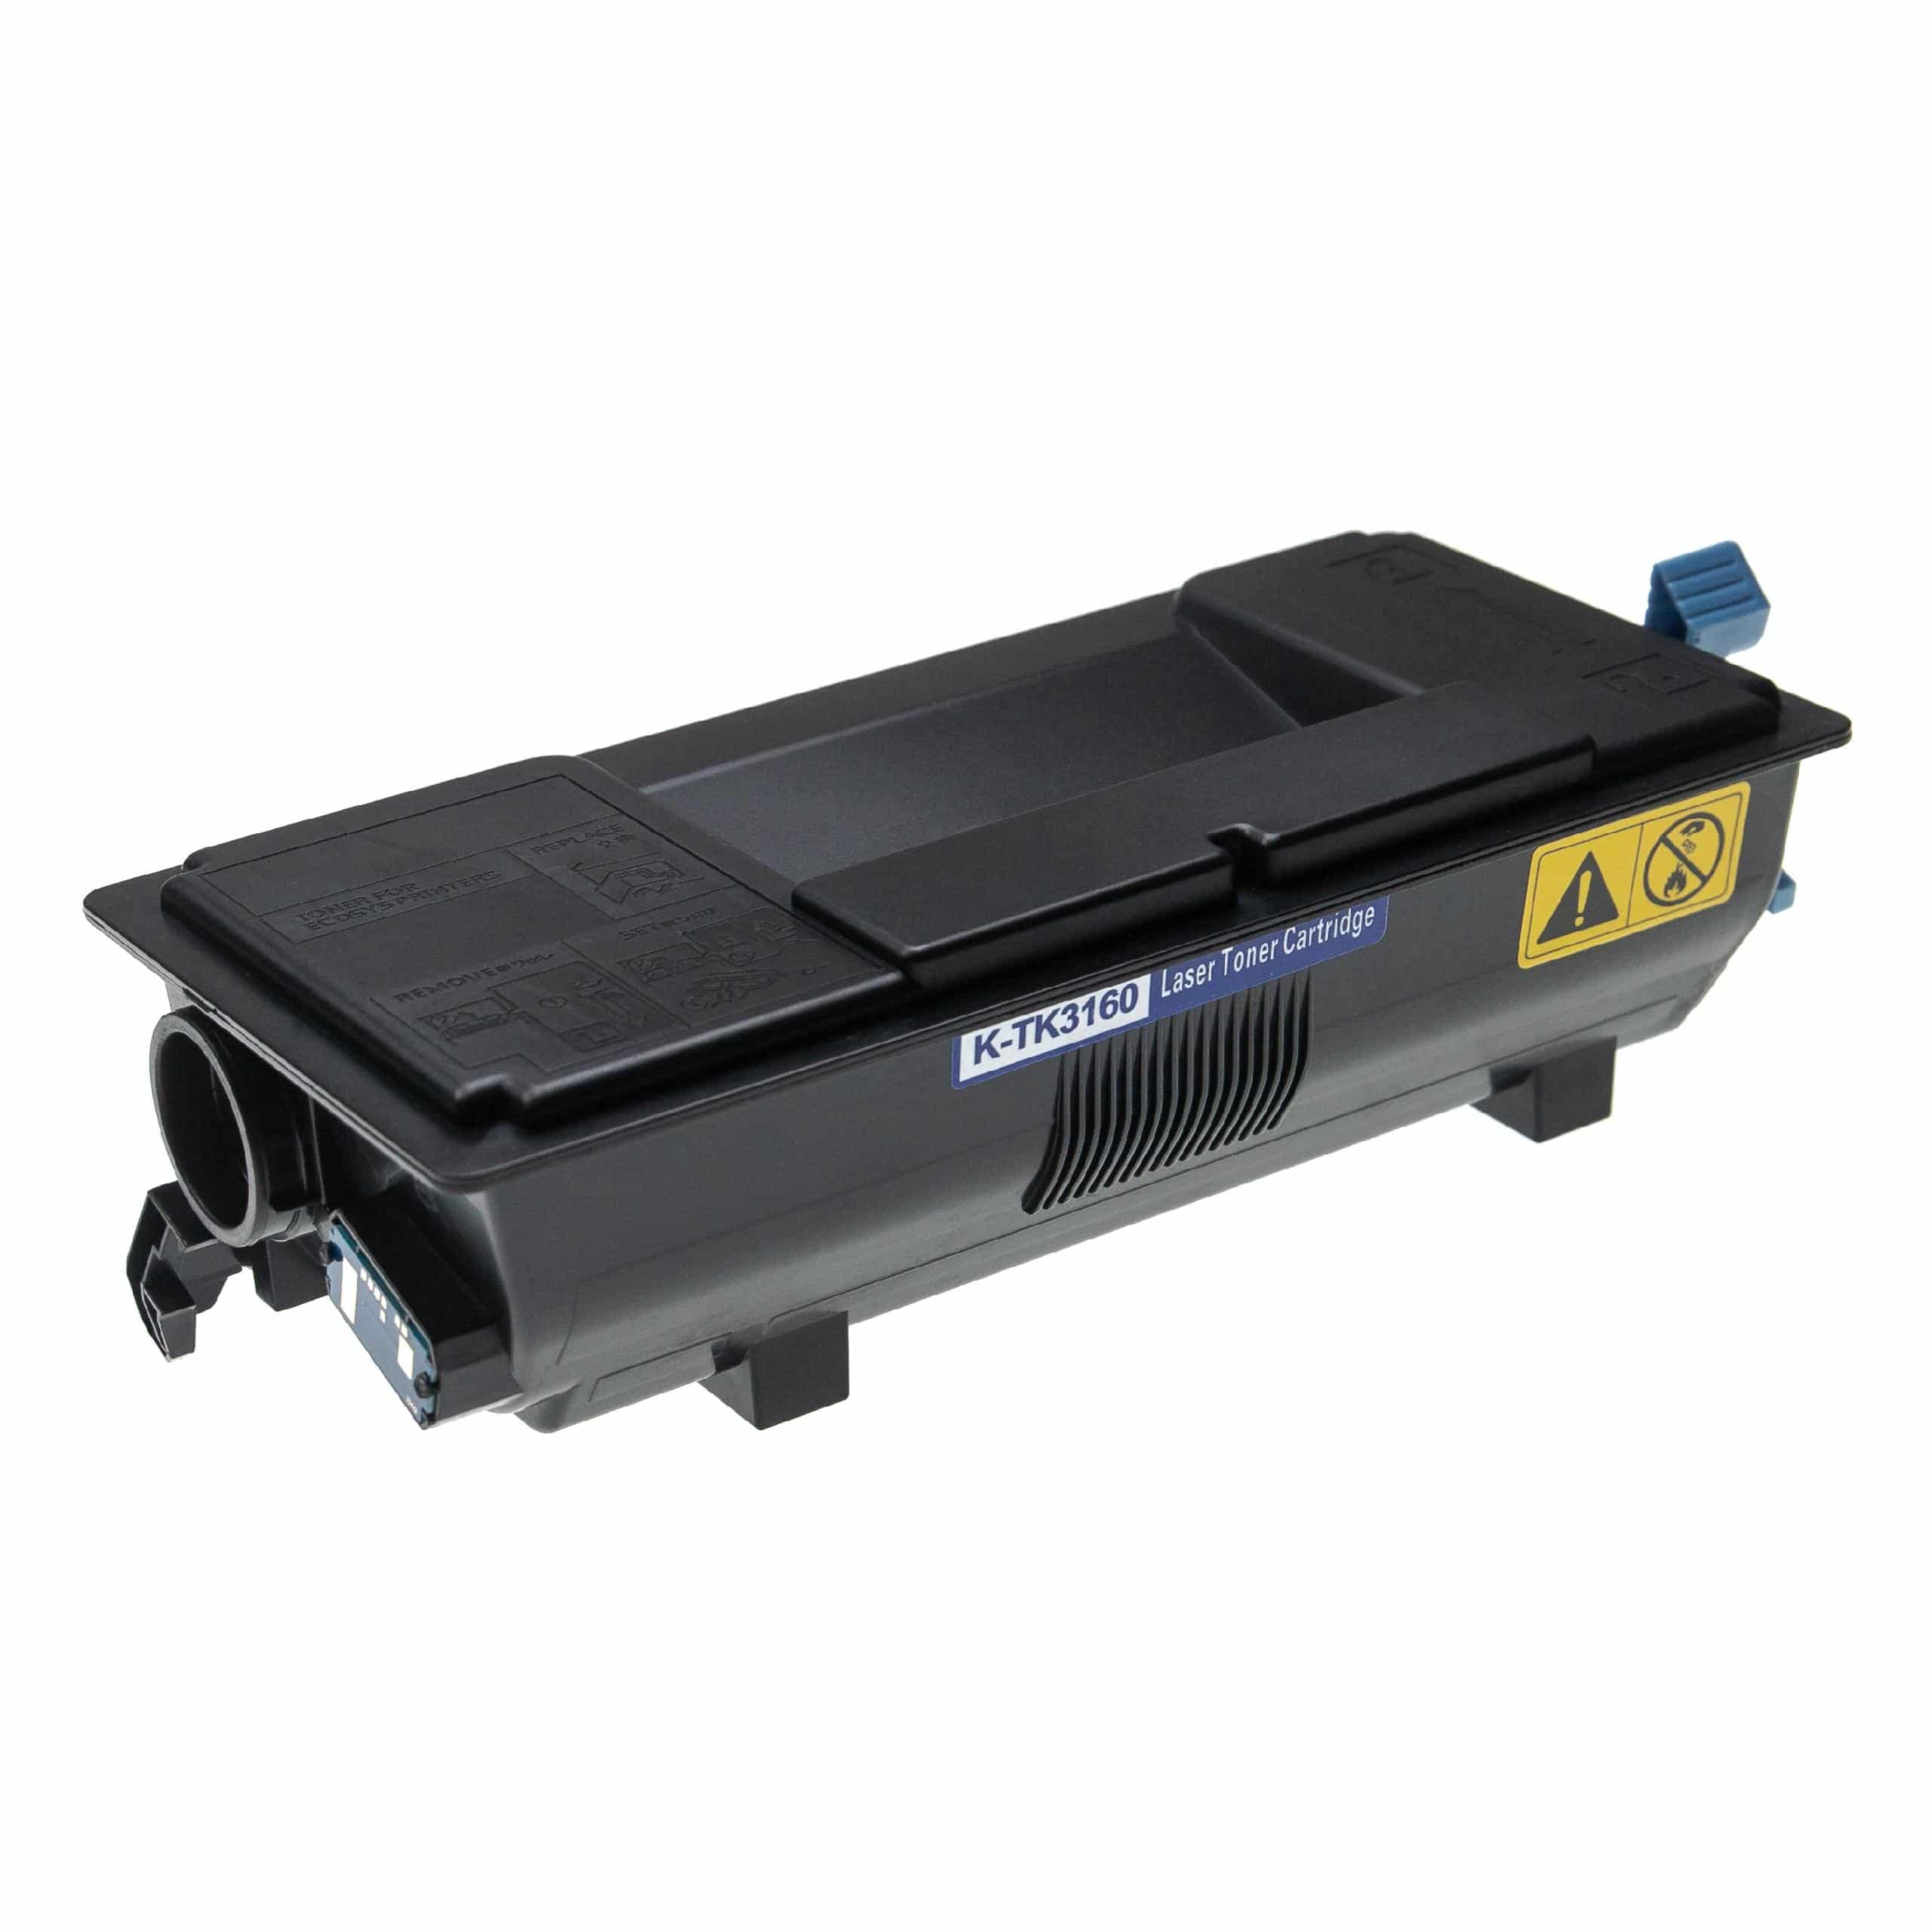 5x Cartouches de toner remplace Kyocera TK-3160 pour imprimante laser Kyocera + récupérateur, noir